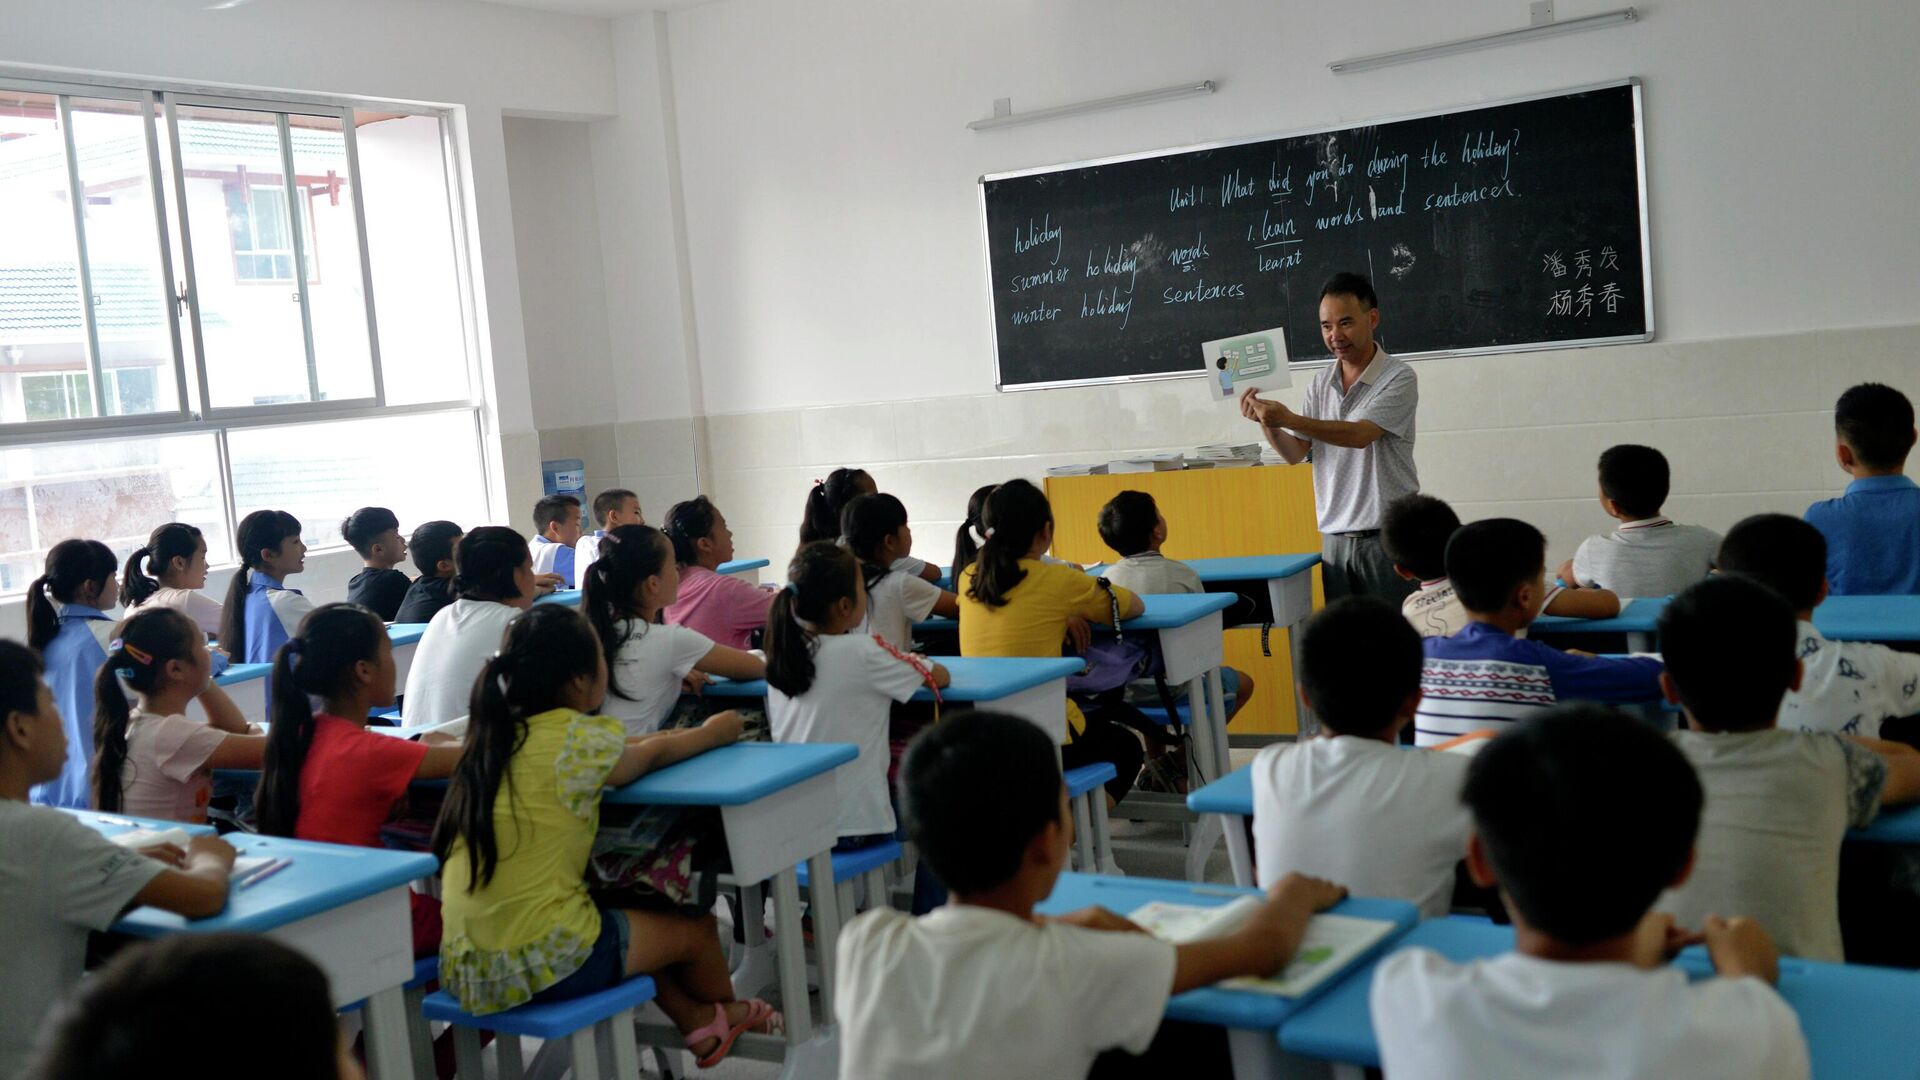 Дети во время урока в одной из школ Китая - РИА Новости, 1920, 14.12.2019